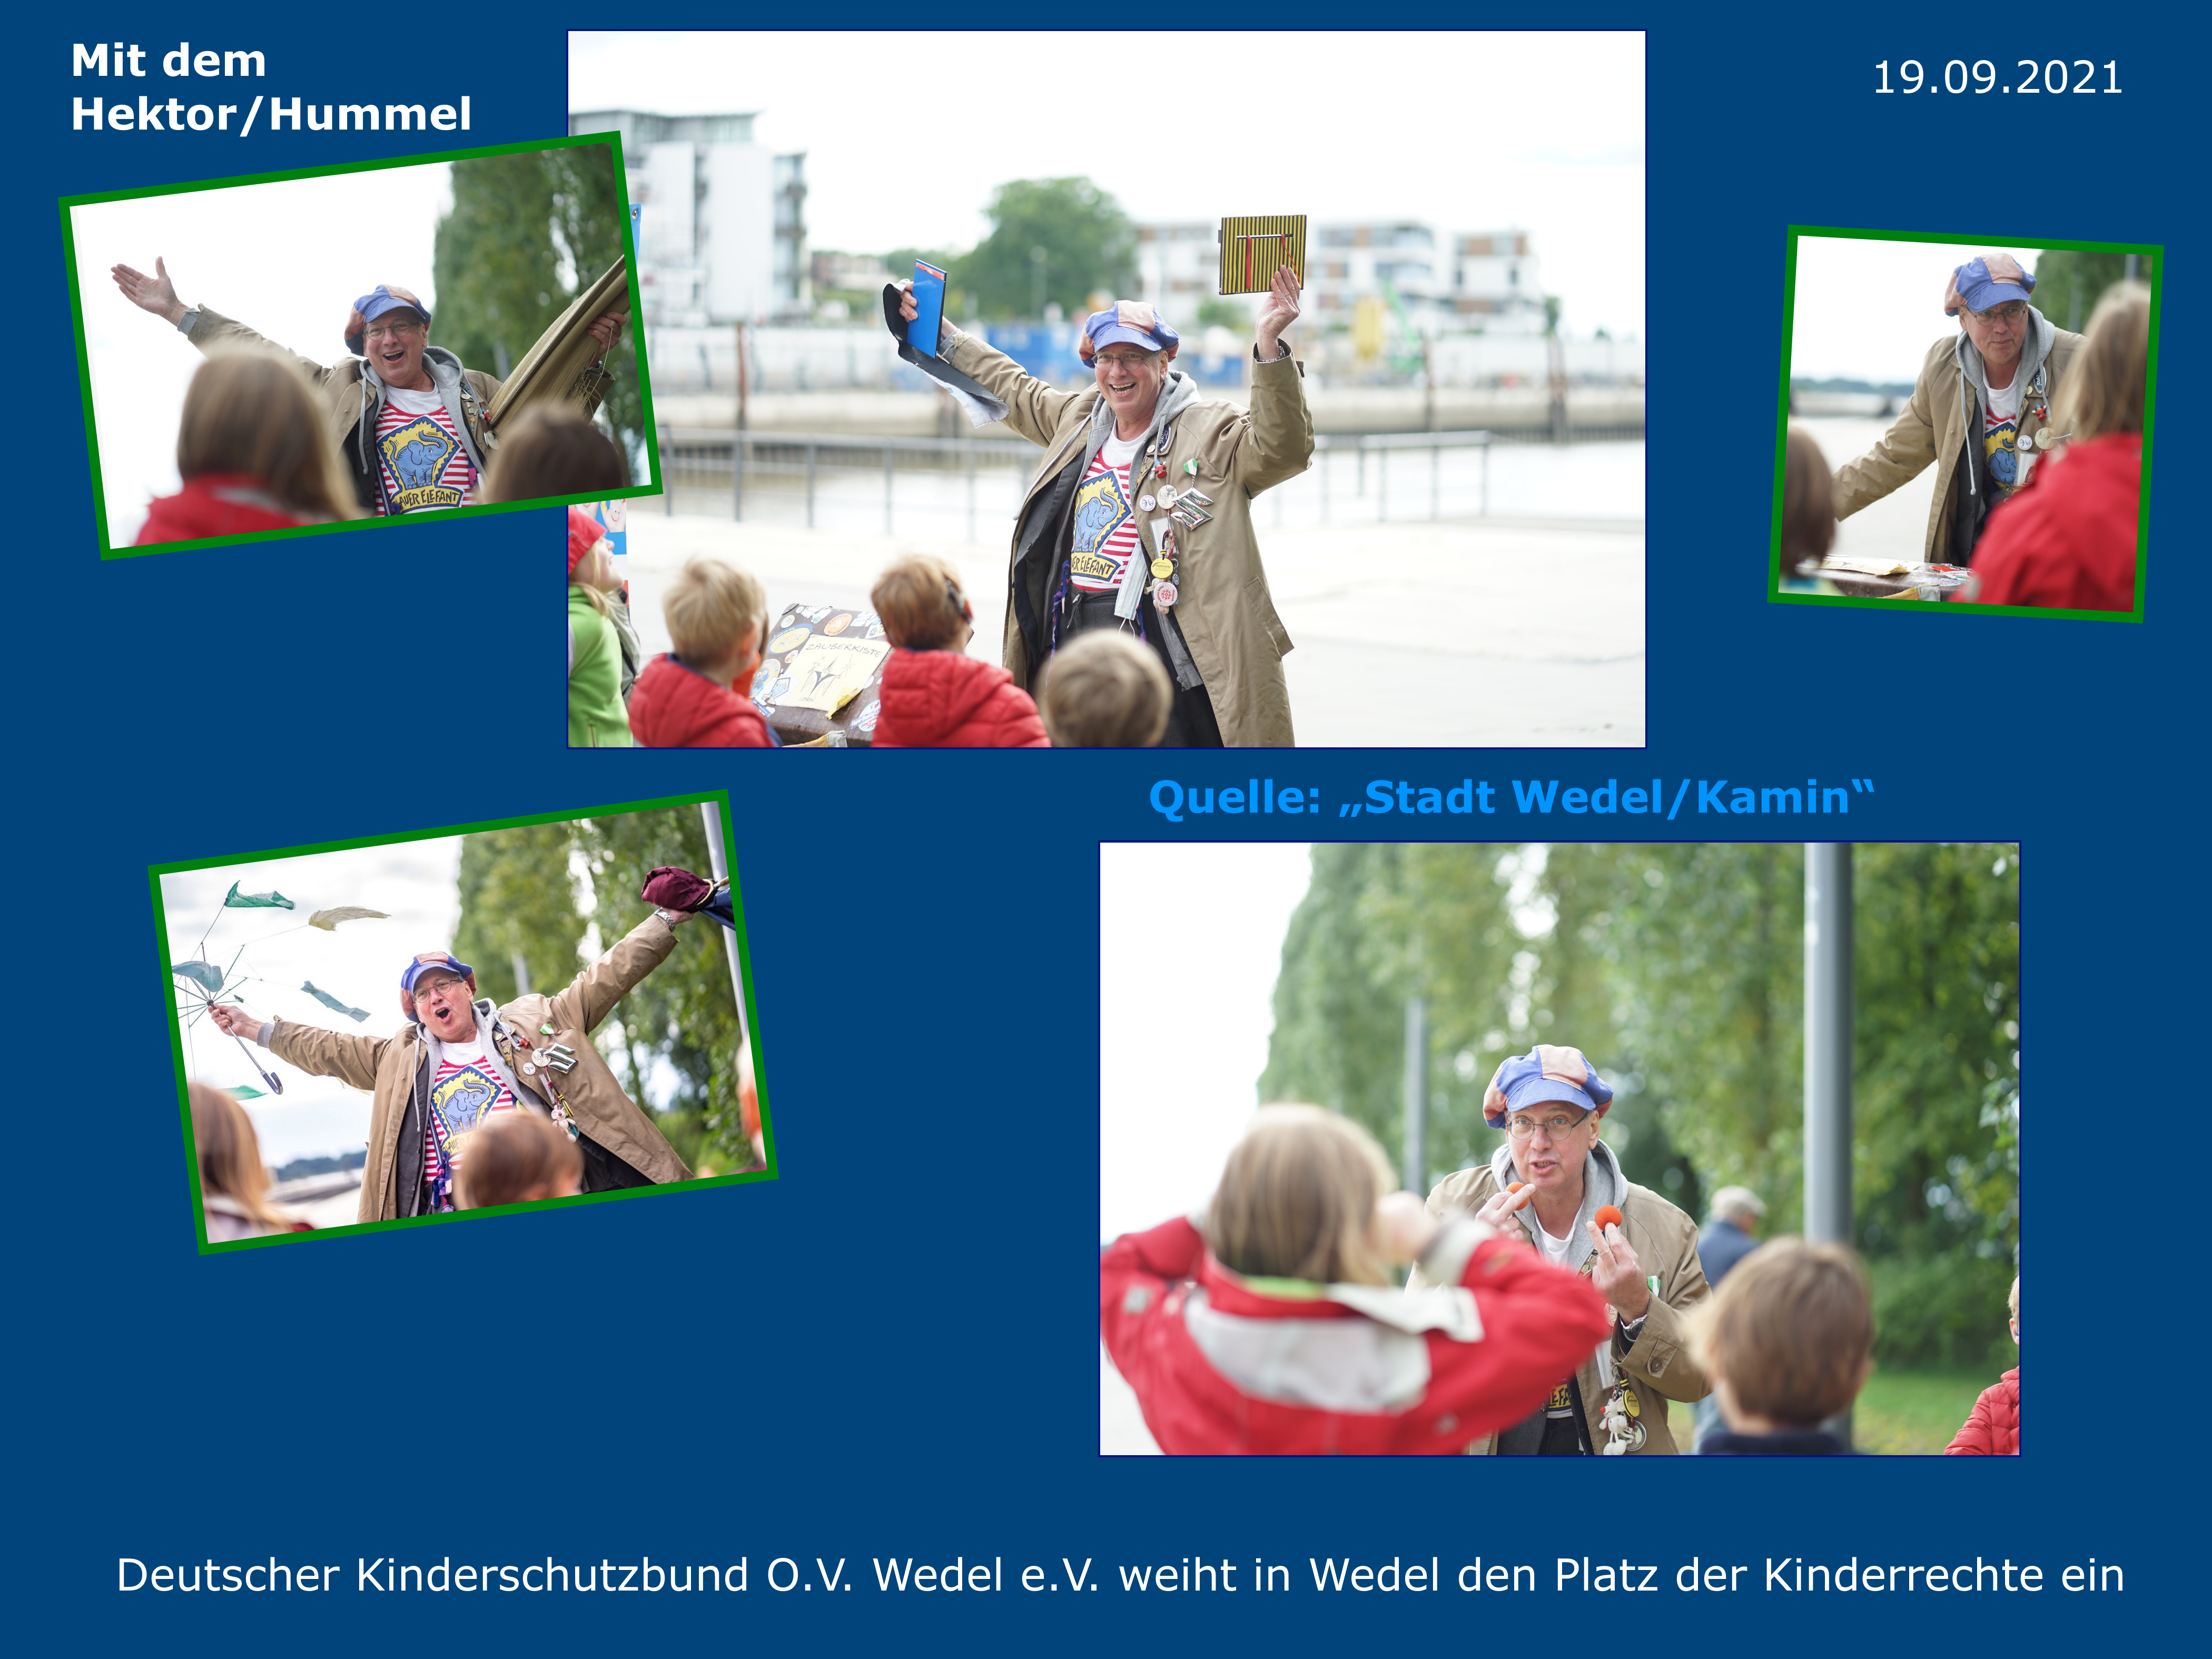 19.09.2021 - Einweihung des Kinderechteplatzes in Wedel